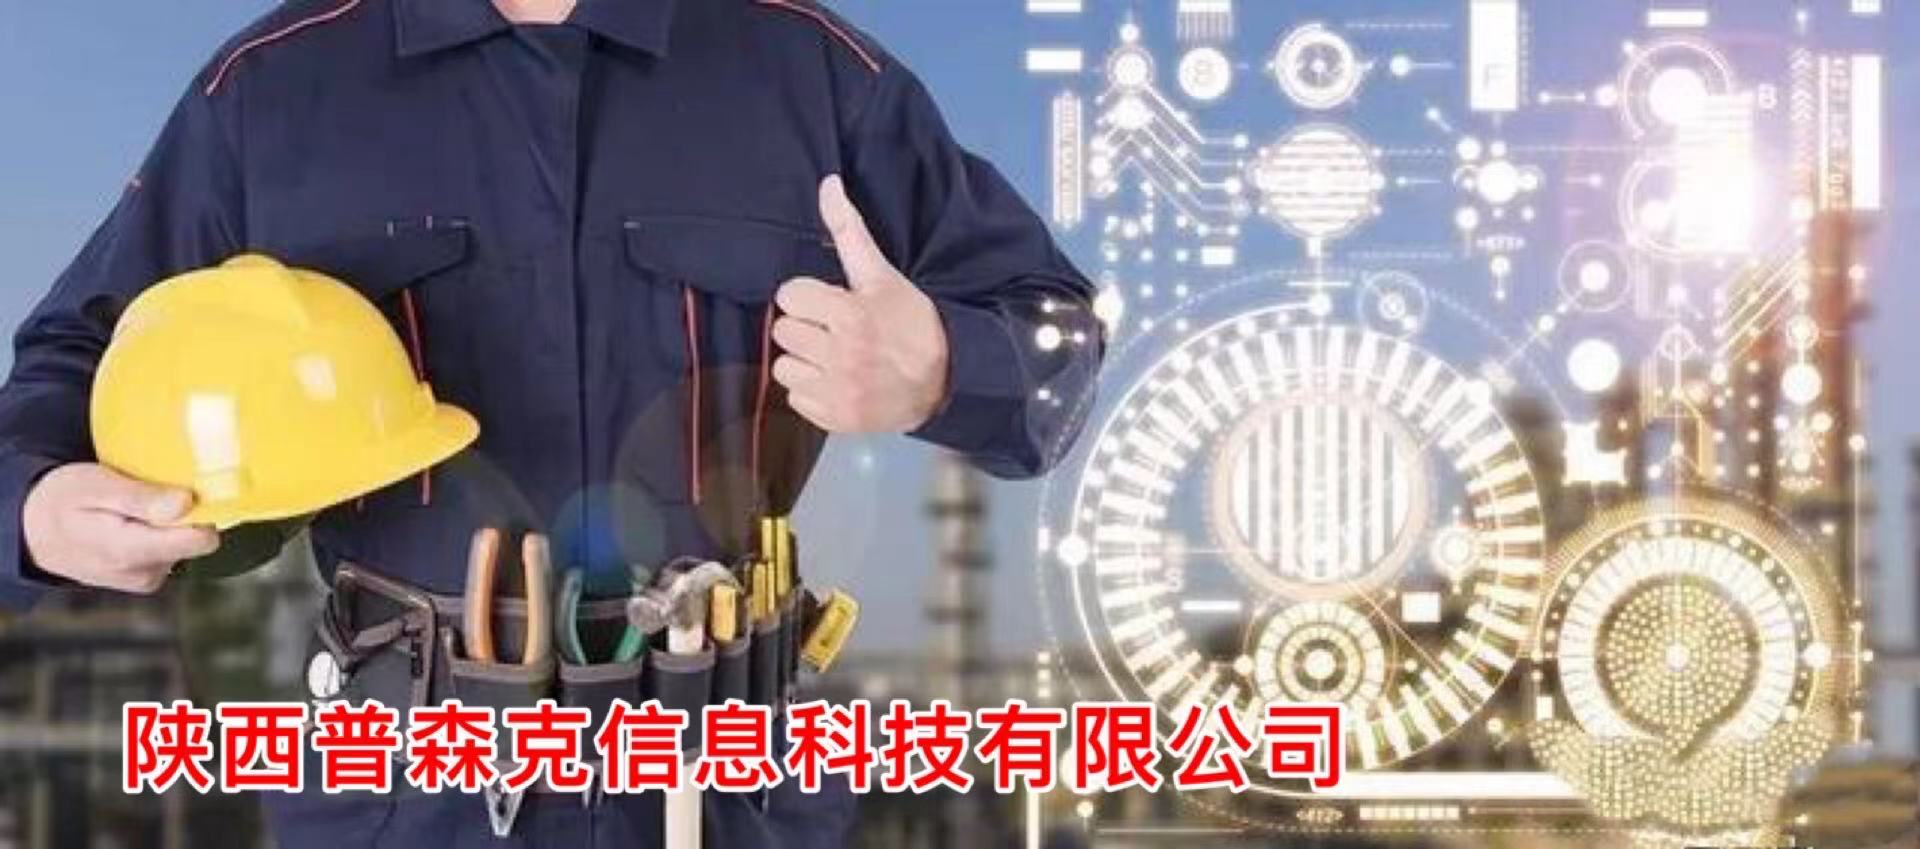 申报陕西省2021年初中高级工程师职称满足条件图片